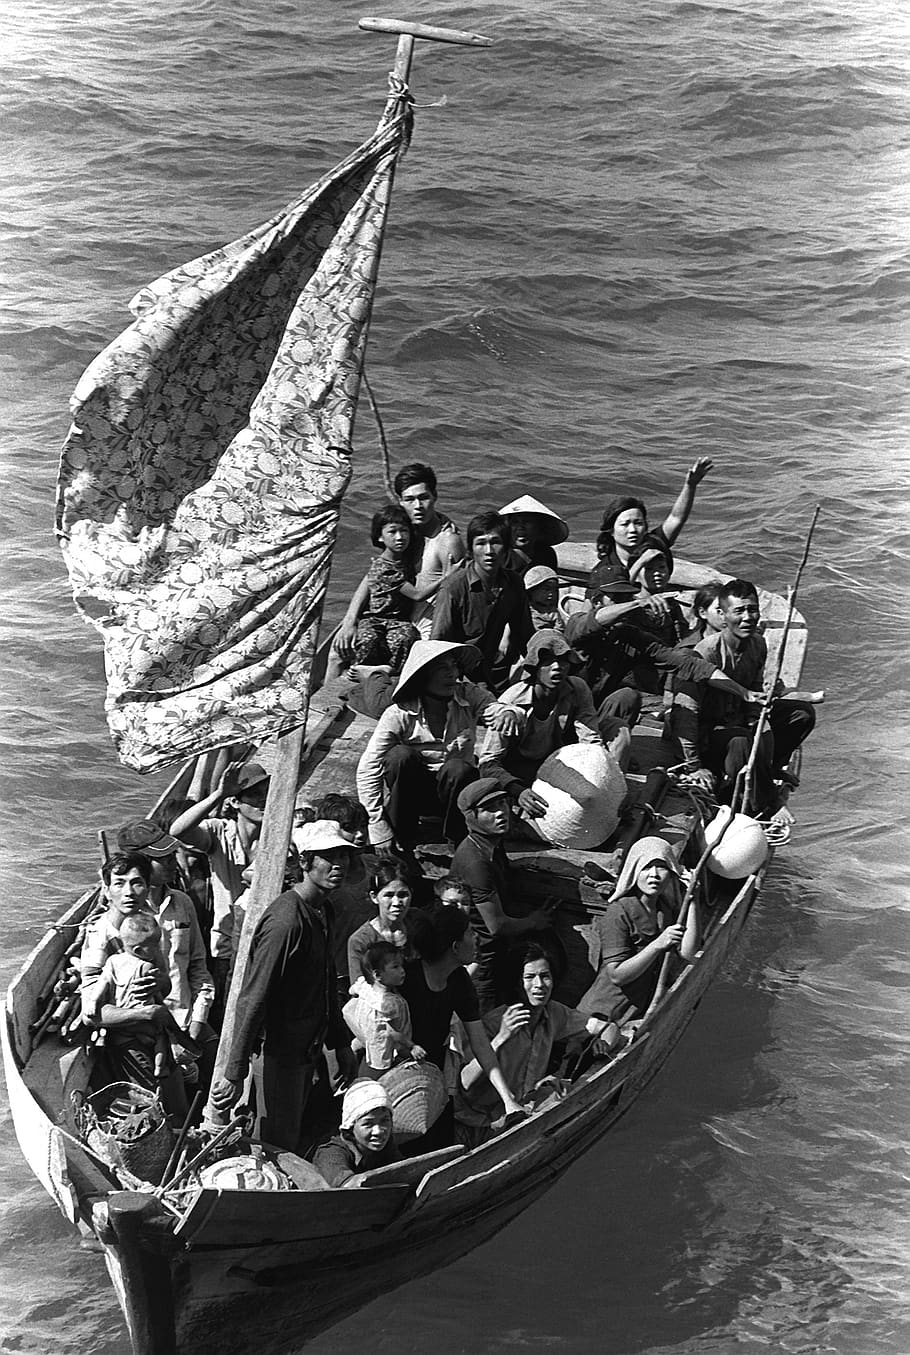 gente del barco, 35 refugiados vietnamitas, 1982, barco pesquero, ocho días en el mar, rescate, cresta azul de los EE. UU., barco anfibio, barco, océano